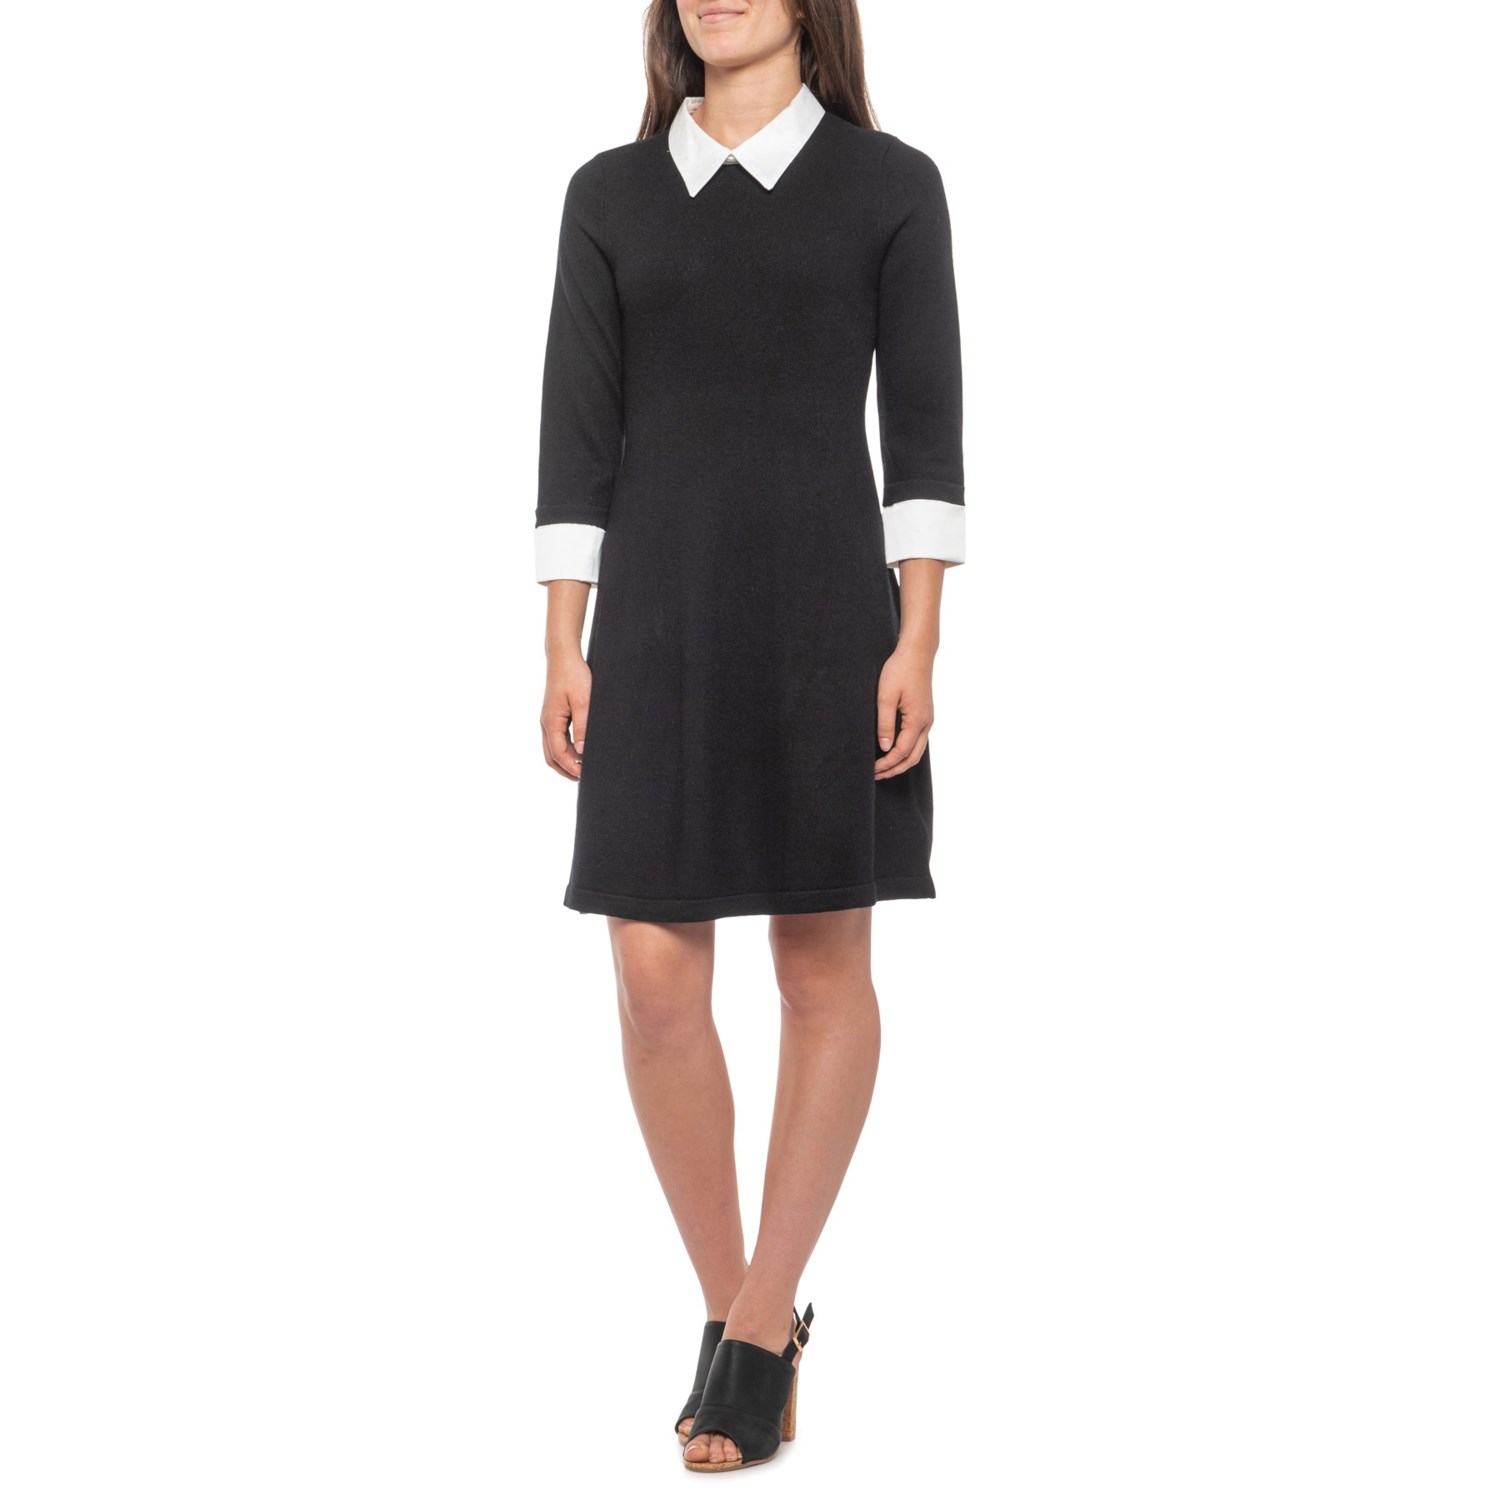 Tahari Black-White Collar Sweater Dress - Merino Wool, 3/4 Sleeve (For  Women)